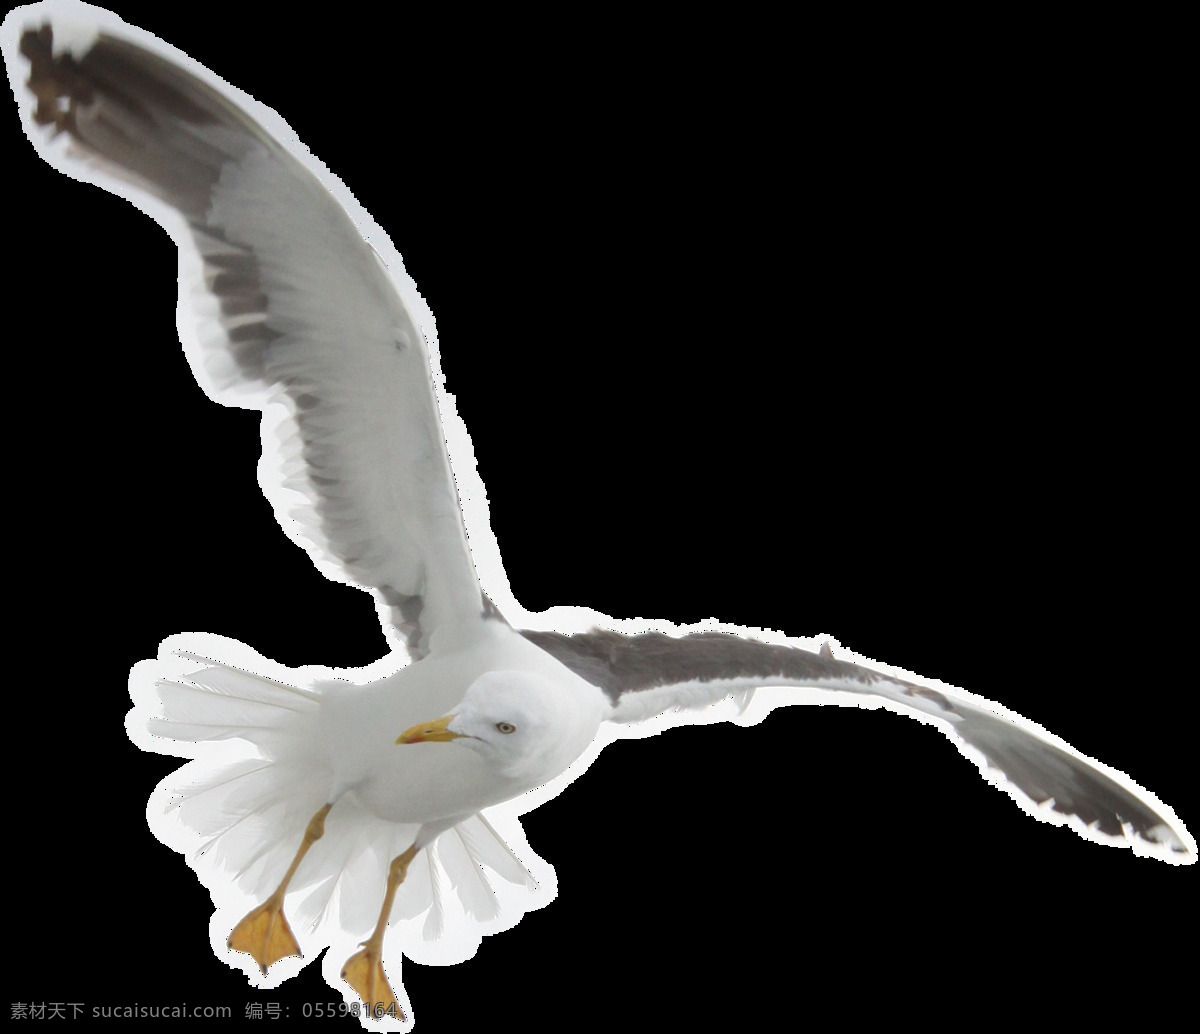 展翅 翱翔 海鸥 免 抠 透明 图 层 鸟类动物 可爱动物图片 家禽 家畜 动物大全 野生动物 世界 上 最 萌 动物 可爱小狗图片 死人 小 动物图片 野生动物图片 萌宠图片